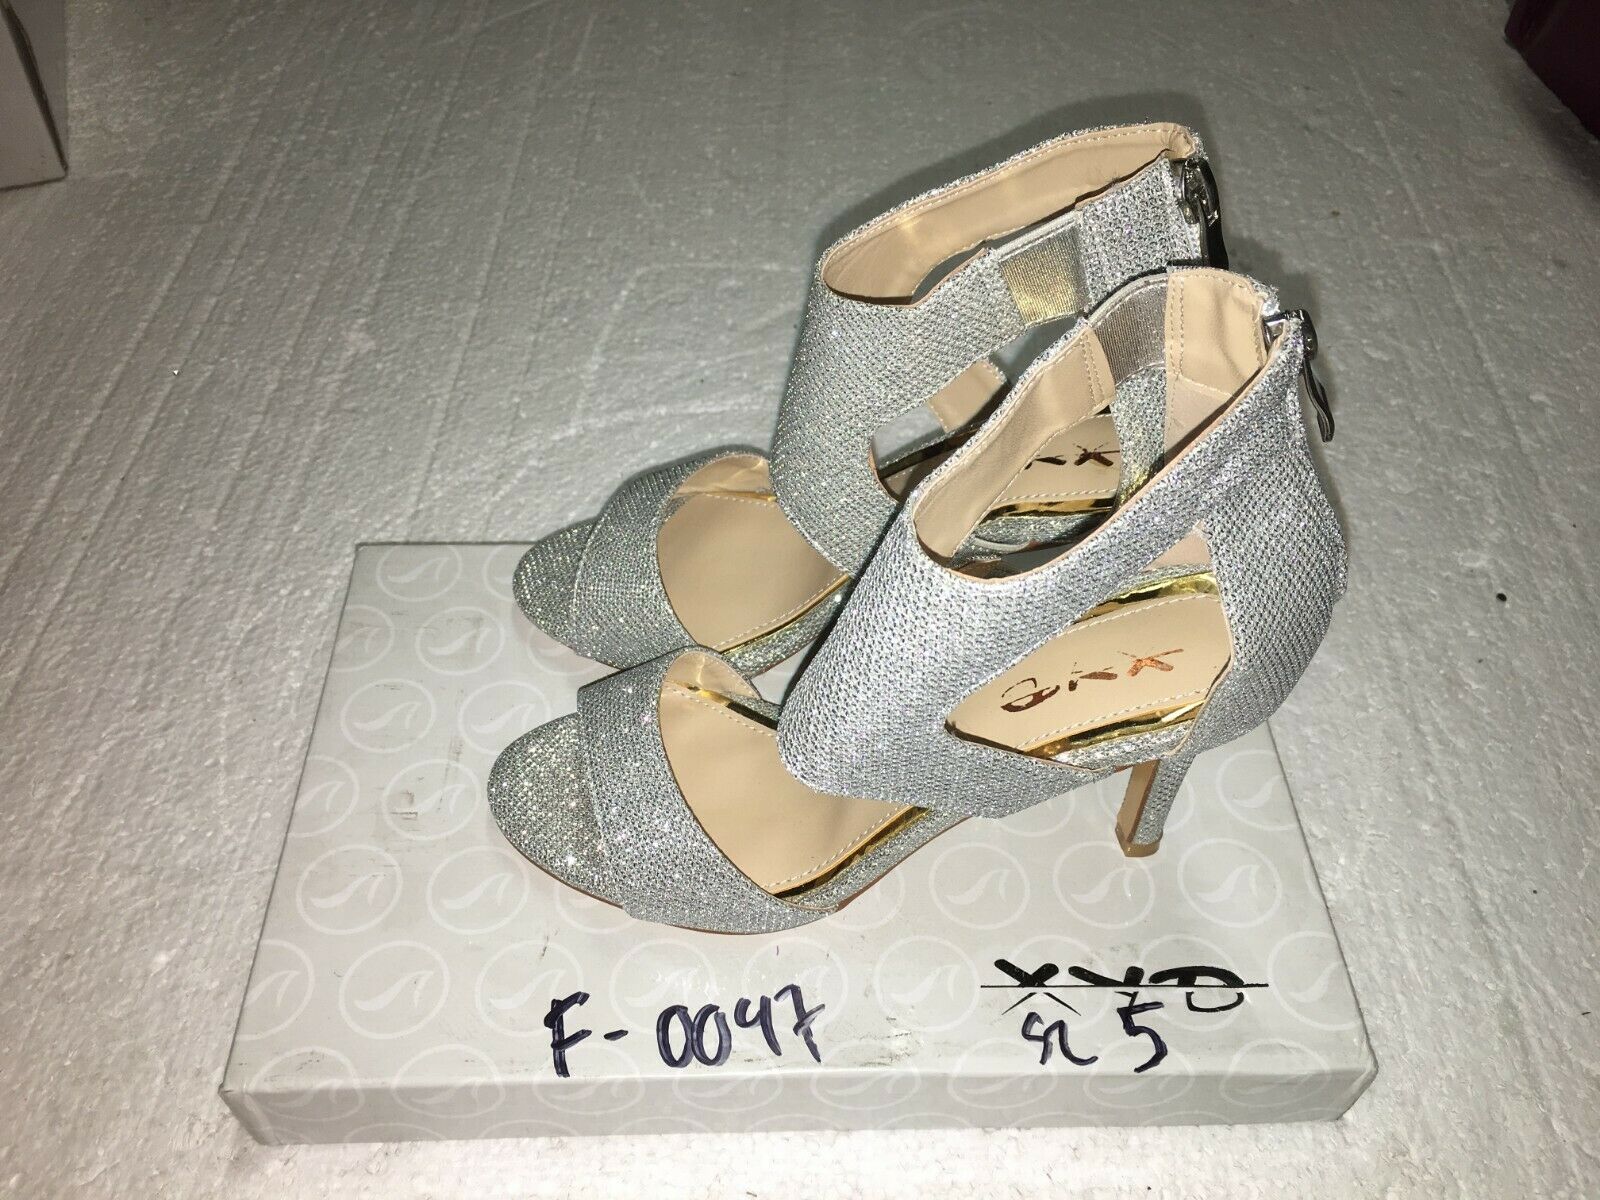 XYD Women's Shoes Silver, Open Toe, High Heels, Size 5